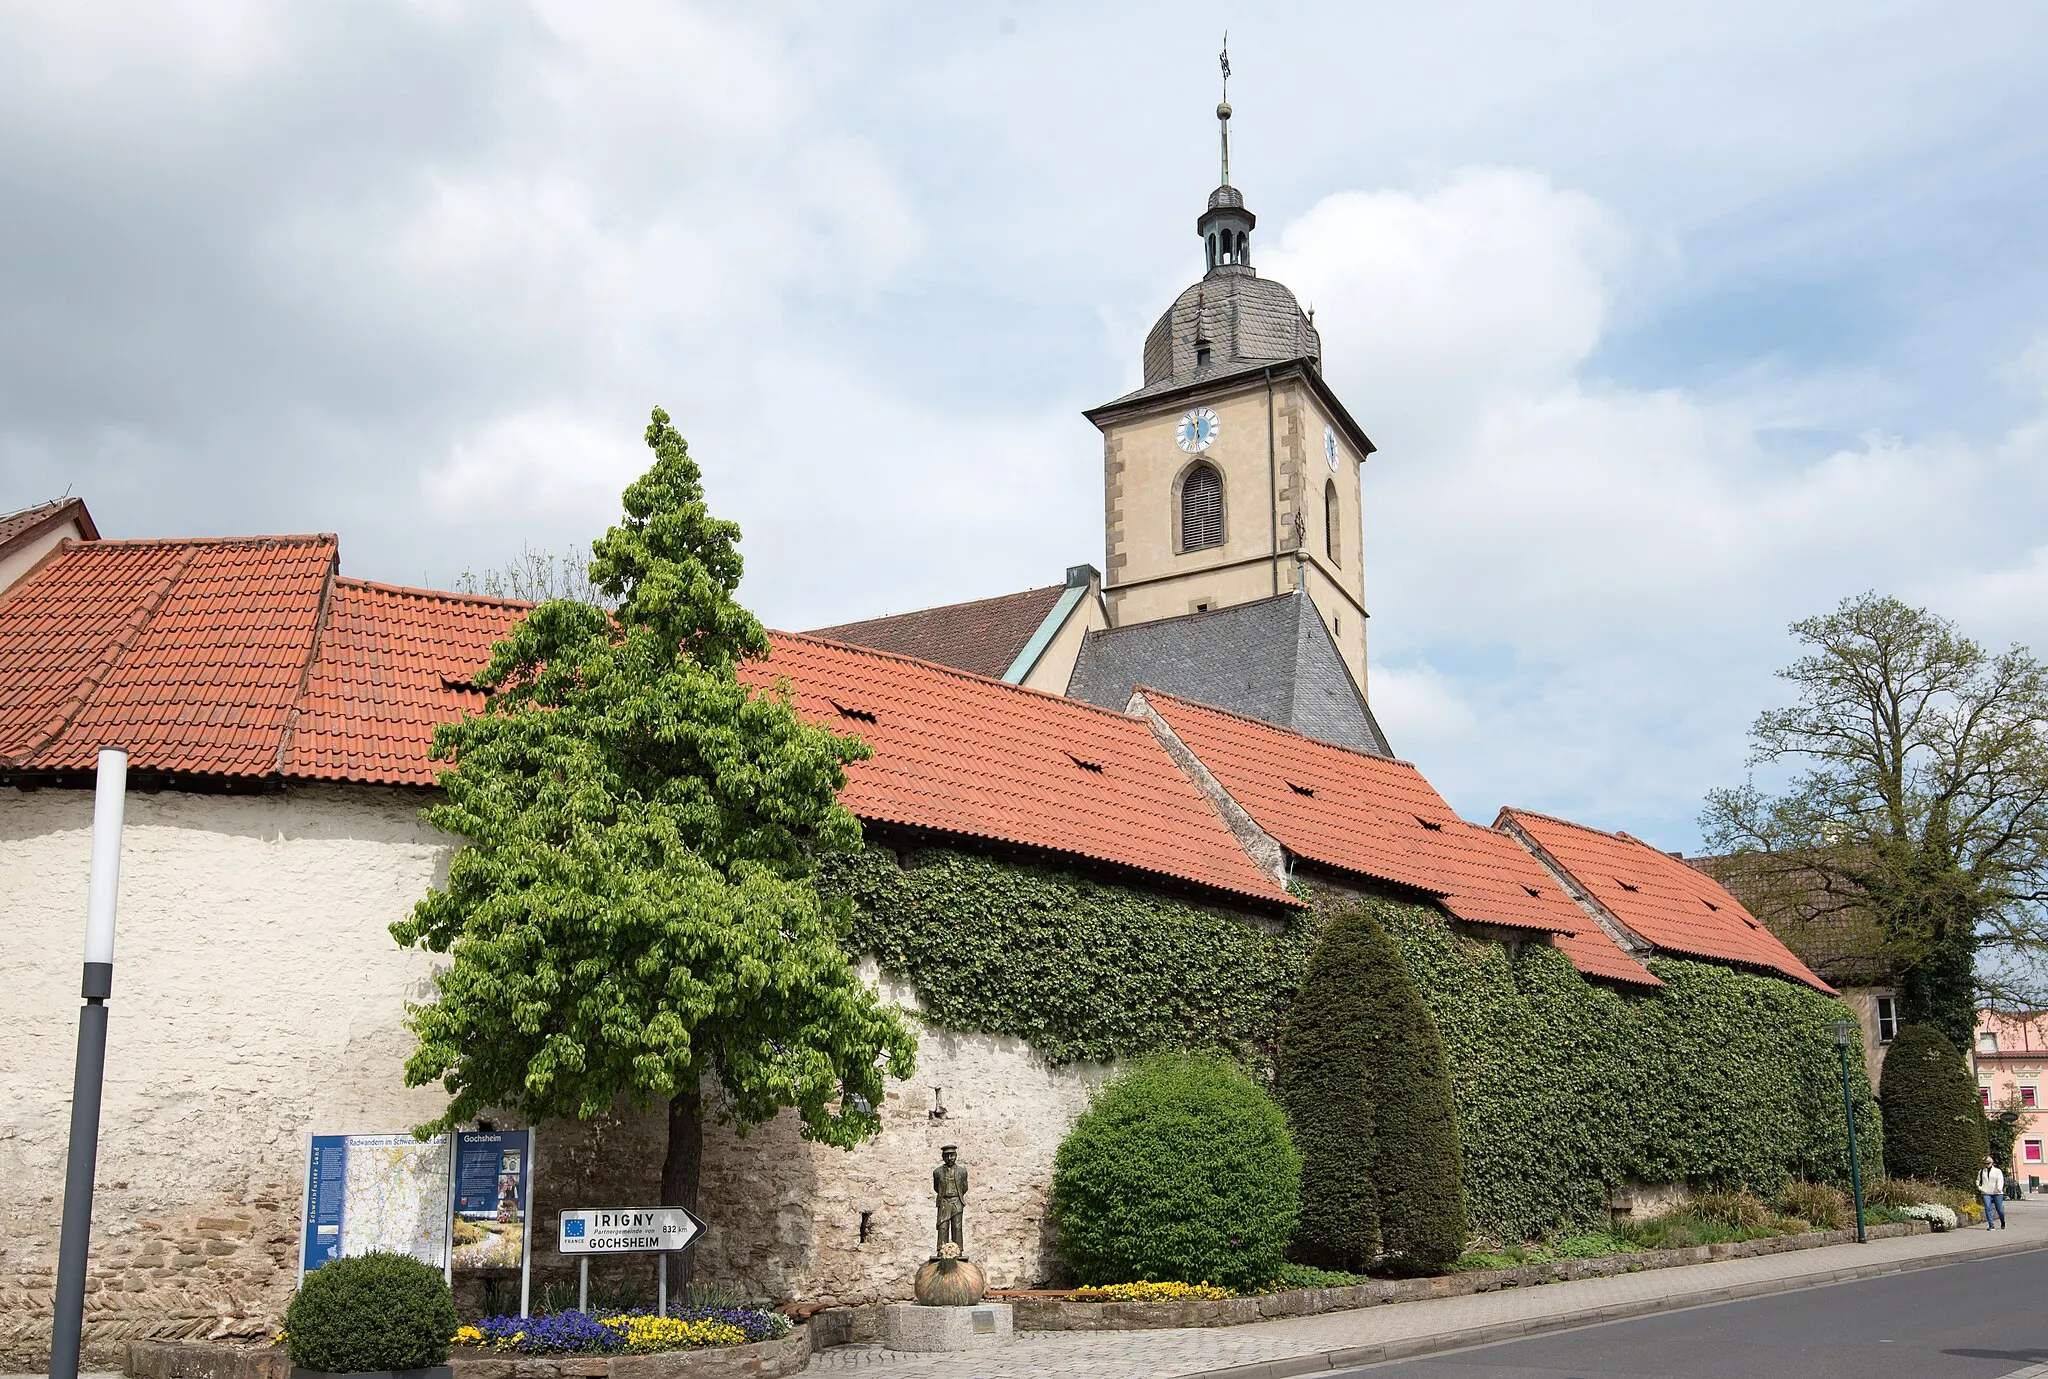 Image of Gochsheim